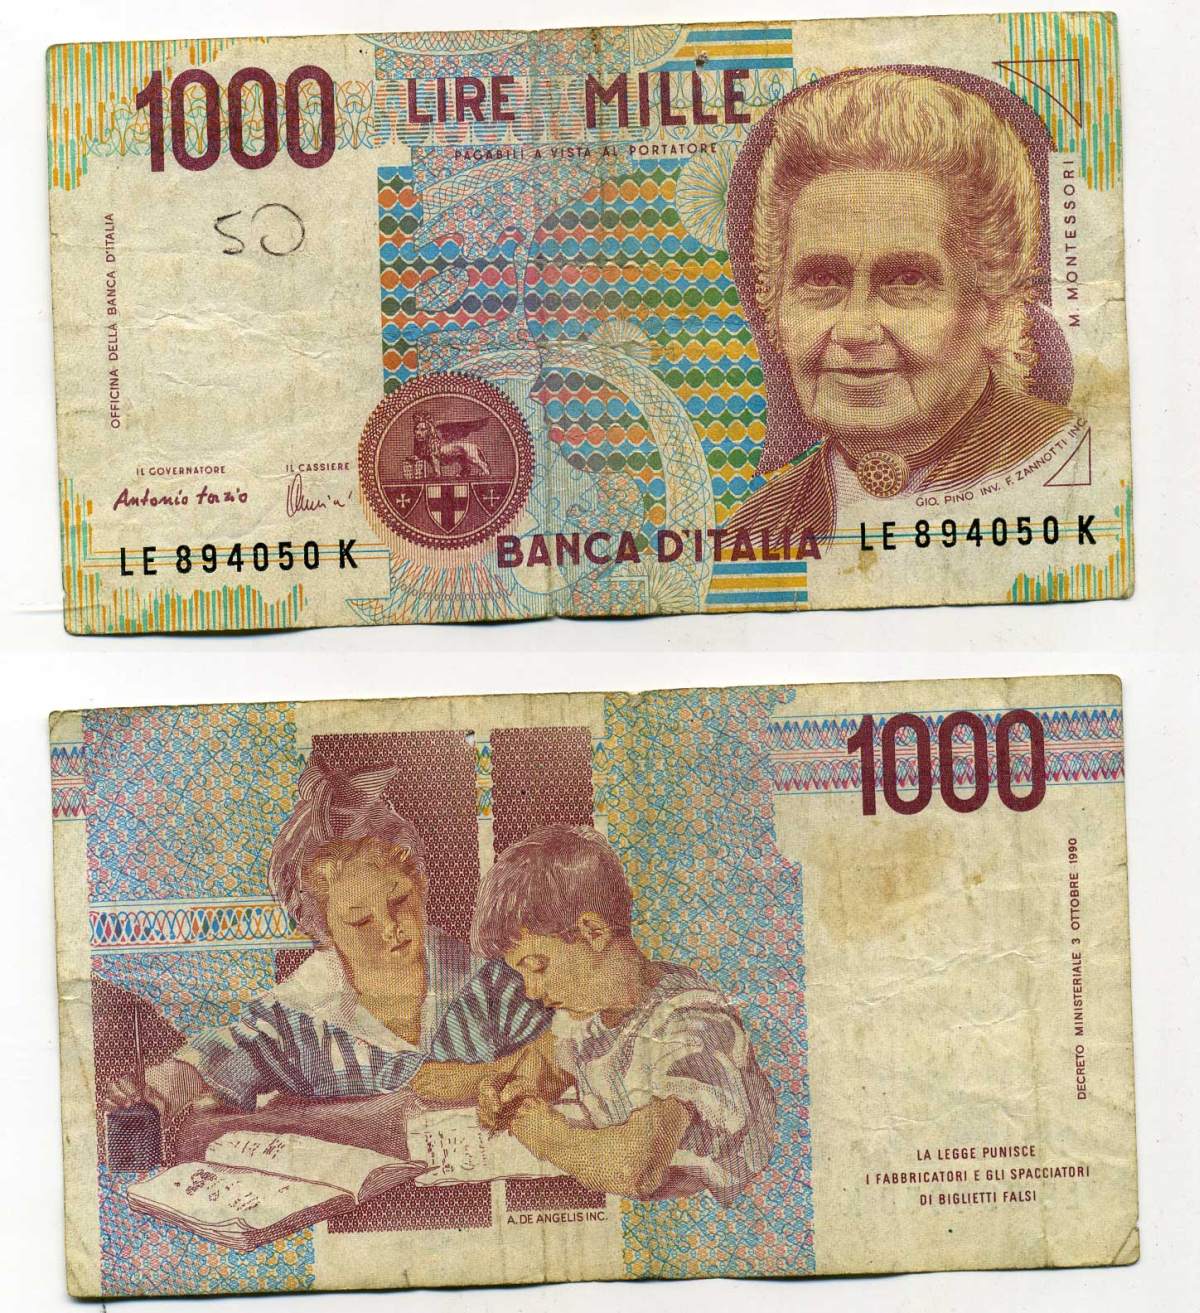 1000 лир в рублях. 1000 Лир Мария Монтессори. 1000 Итальянских лир 1990. Мария Монтессори на банкнотах.